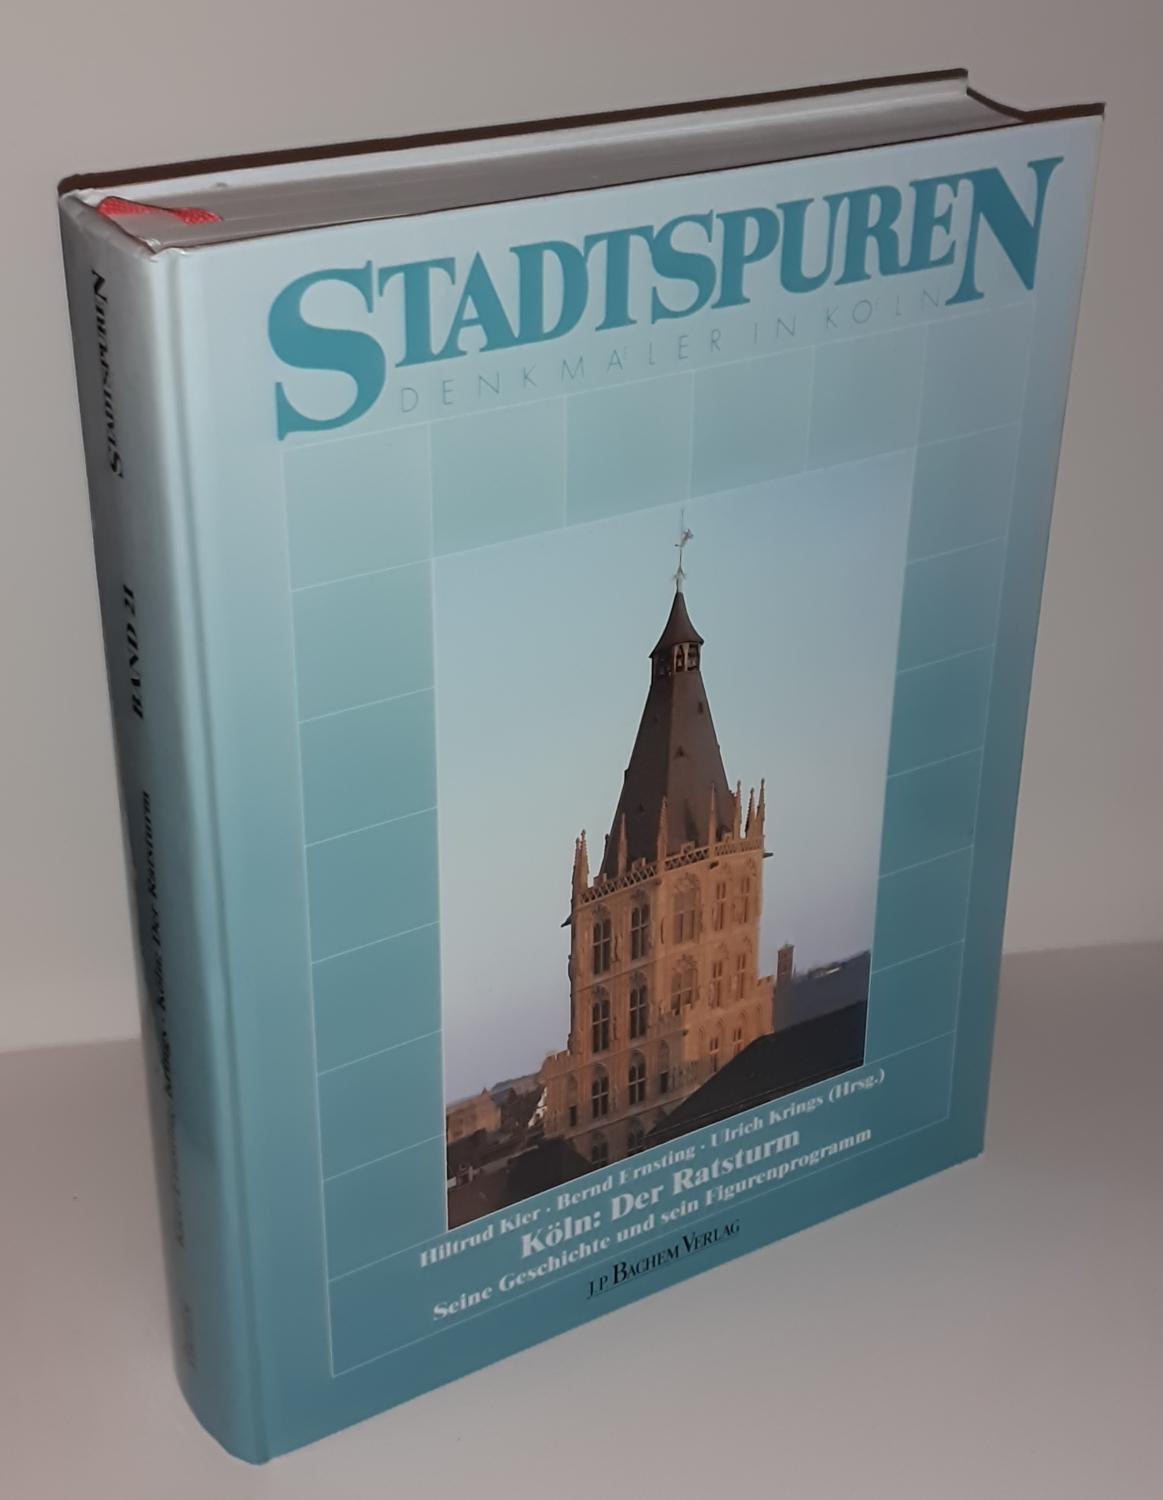 Köln: Der Ratsturm. Seine Geschichte und sein Figurenprogramm. (= Stadtspuren. Denkmäler in Köln, Band 21.) - KIER, Hiltrud / ERNSTING, Bernd / KRINGS, Ulrich (Hrsg.)